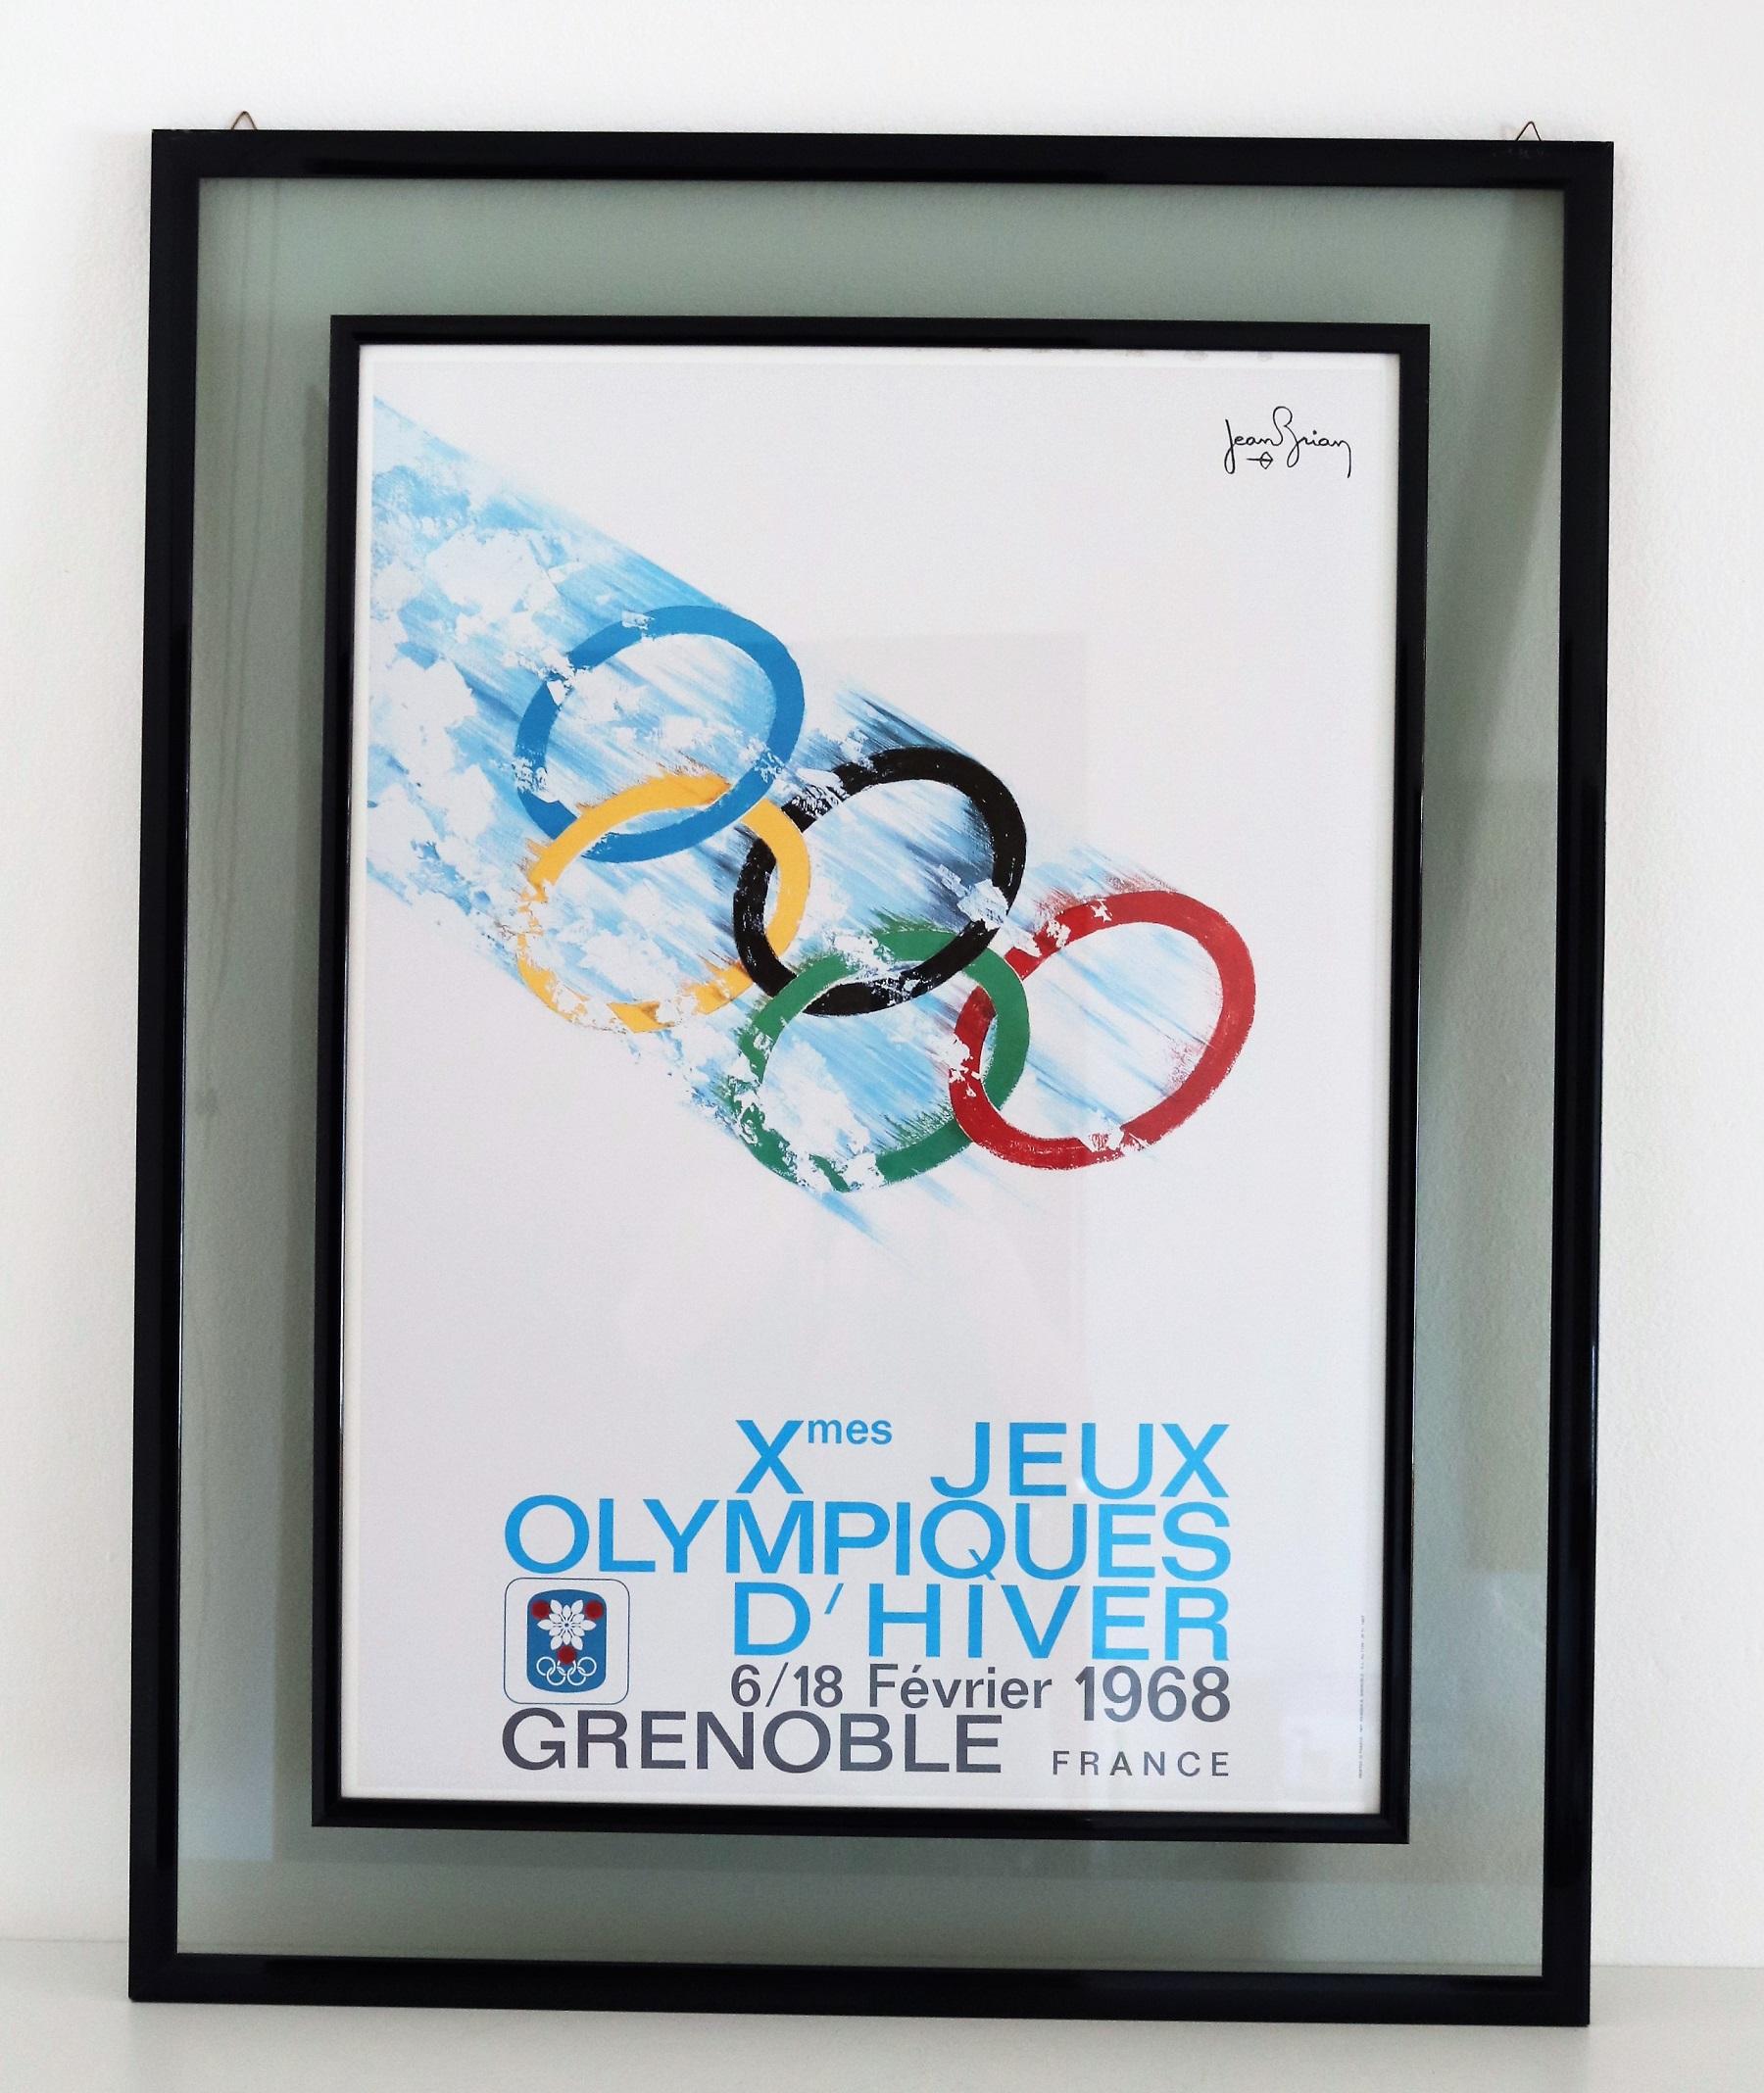 Magnifique art mural d'une affiche vintage conçue par Jean Brian (1910-1990) pour les Jeux olympiques d'hiver de Grenoble, en France, en février 1968.
Le poster est en très bon état et est accompagné de son cadre original en bois et double verre de